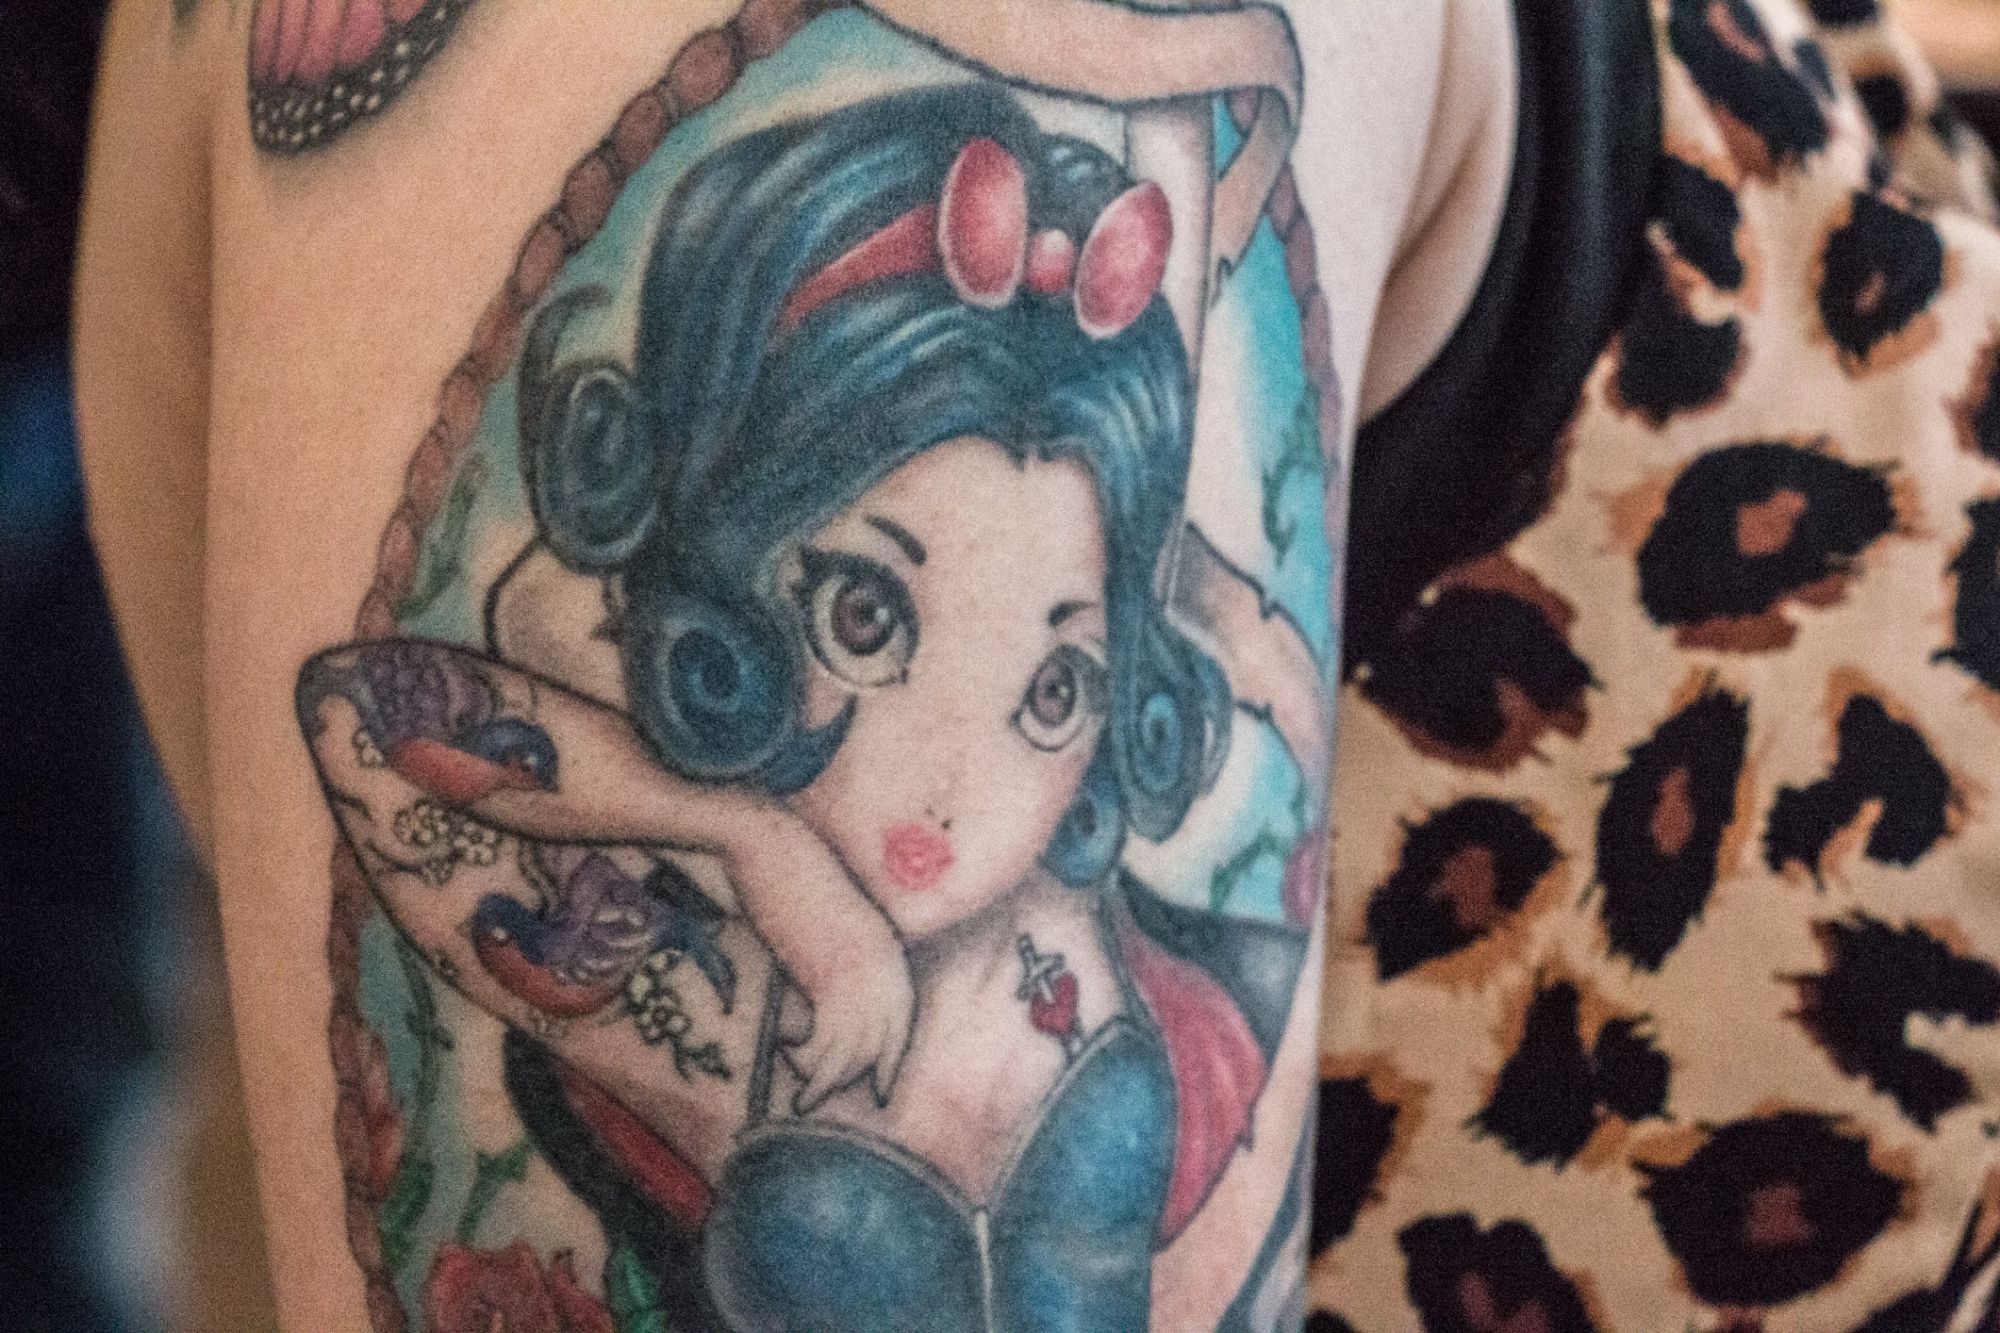 Melody : "La symbolique de ce tatouage, c'est lié à Disney. Je suis fan de Blanche-neige et ça me rappelle mon enfance, moi quand j'étais jeune".